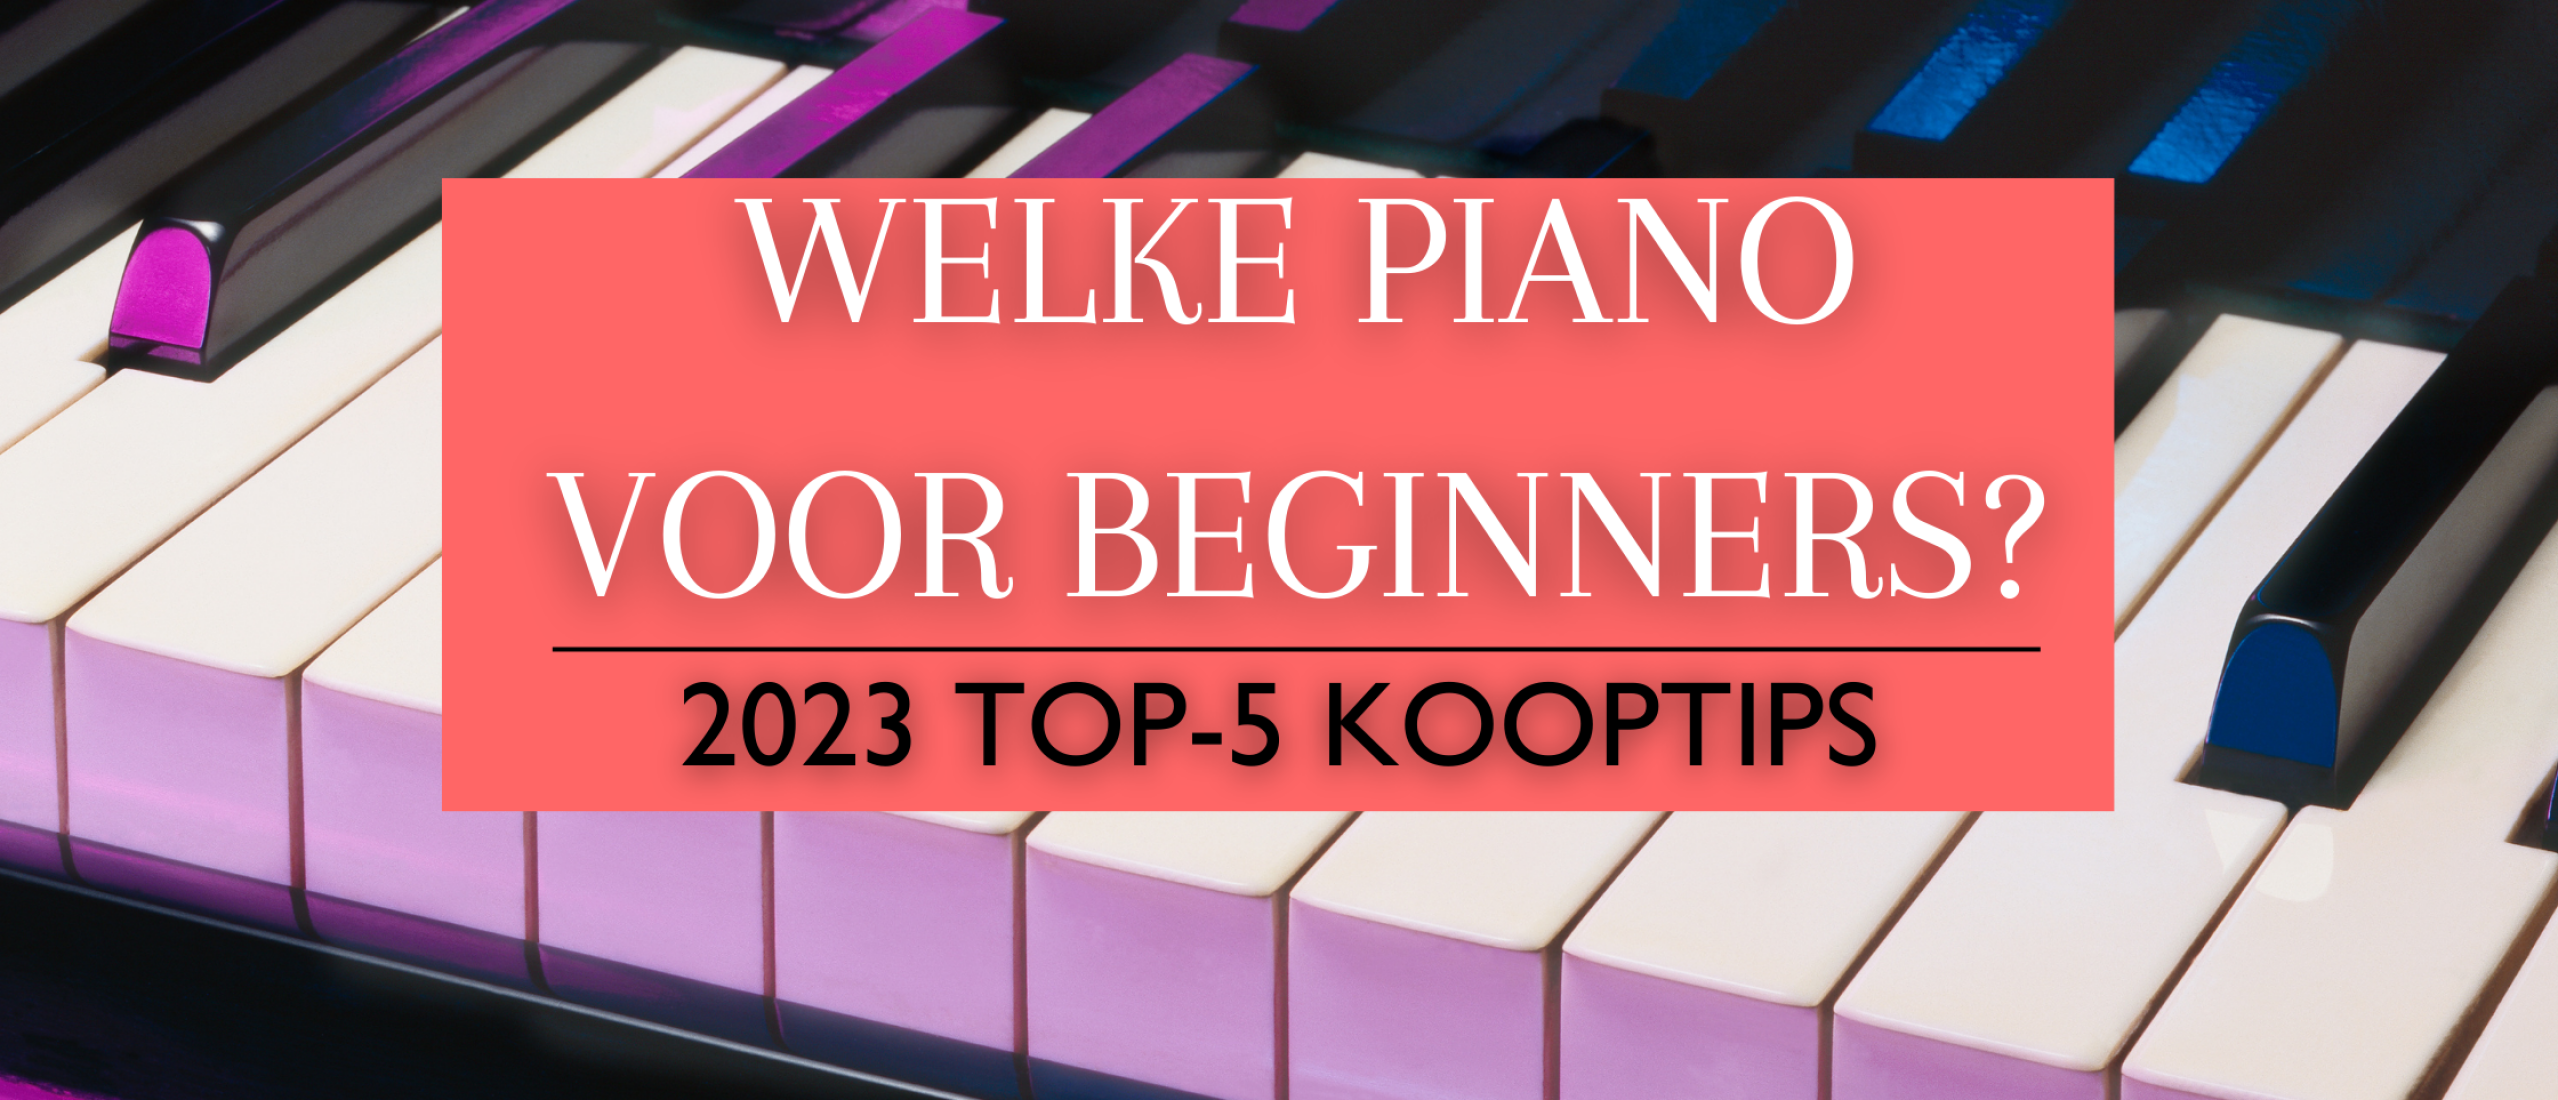 Welke piano voor beginners? Onze top 5 aanbevolen instrumenten